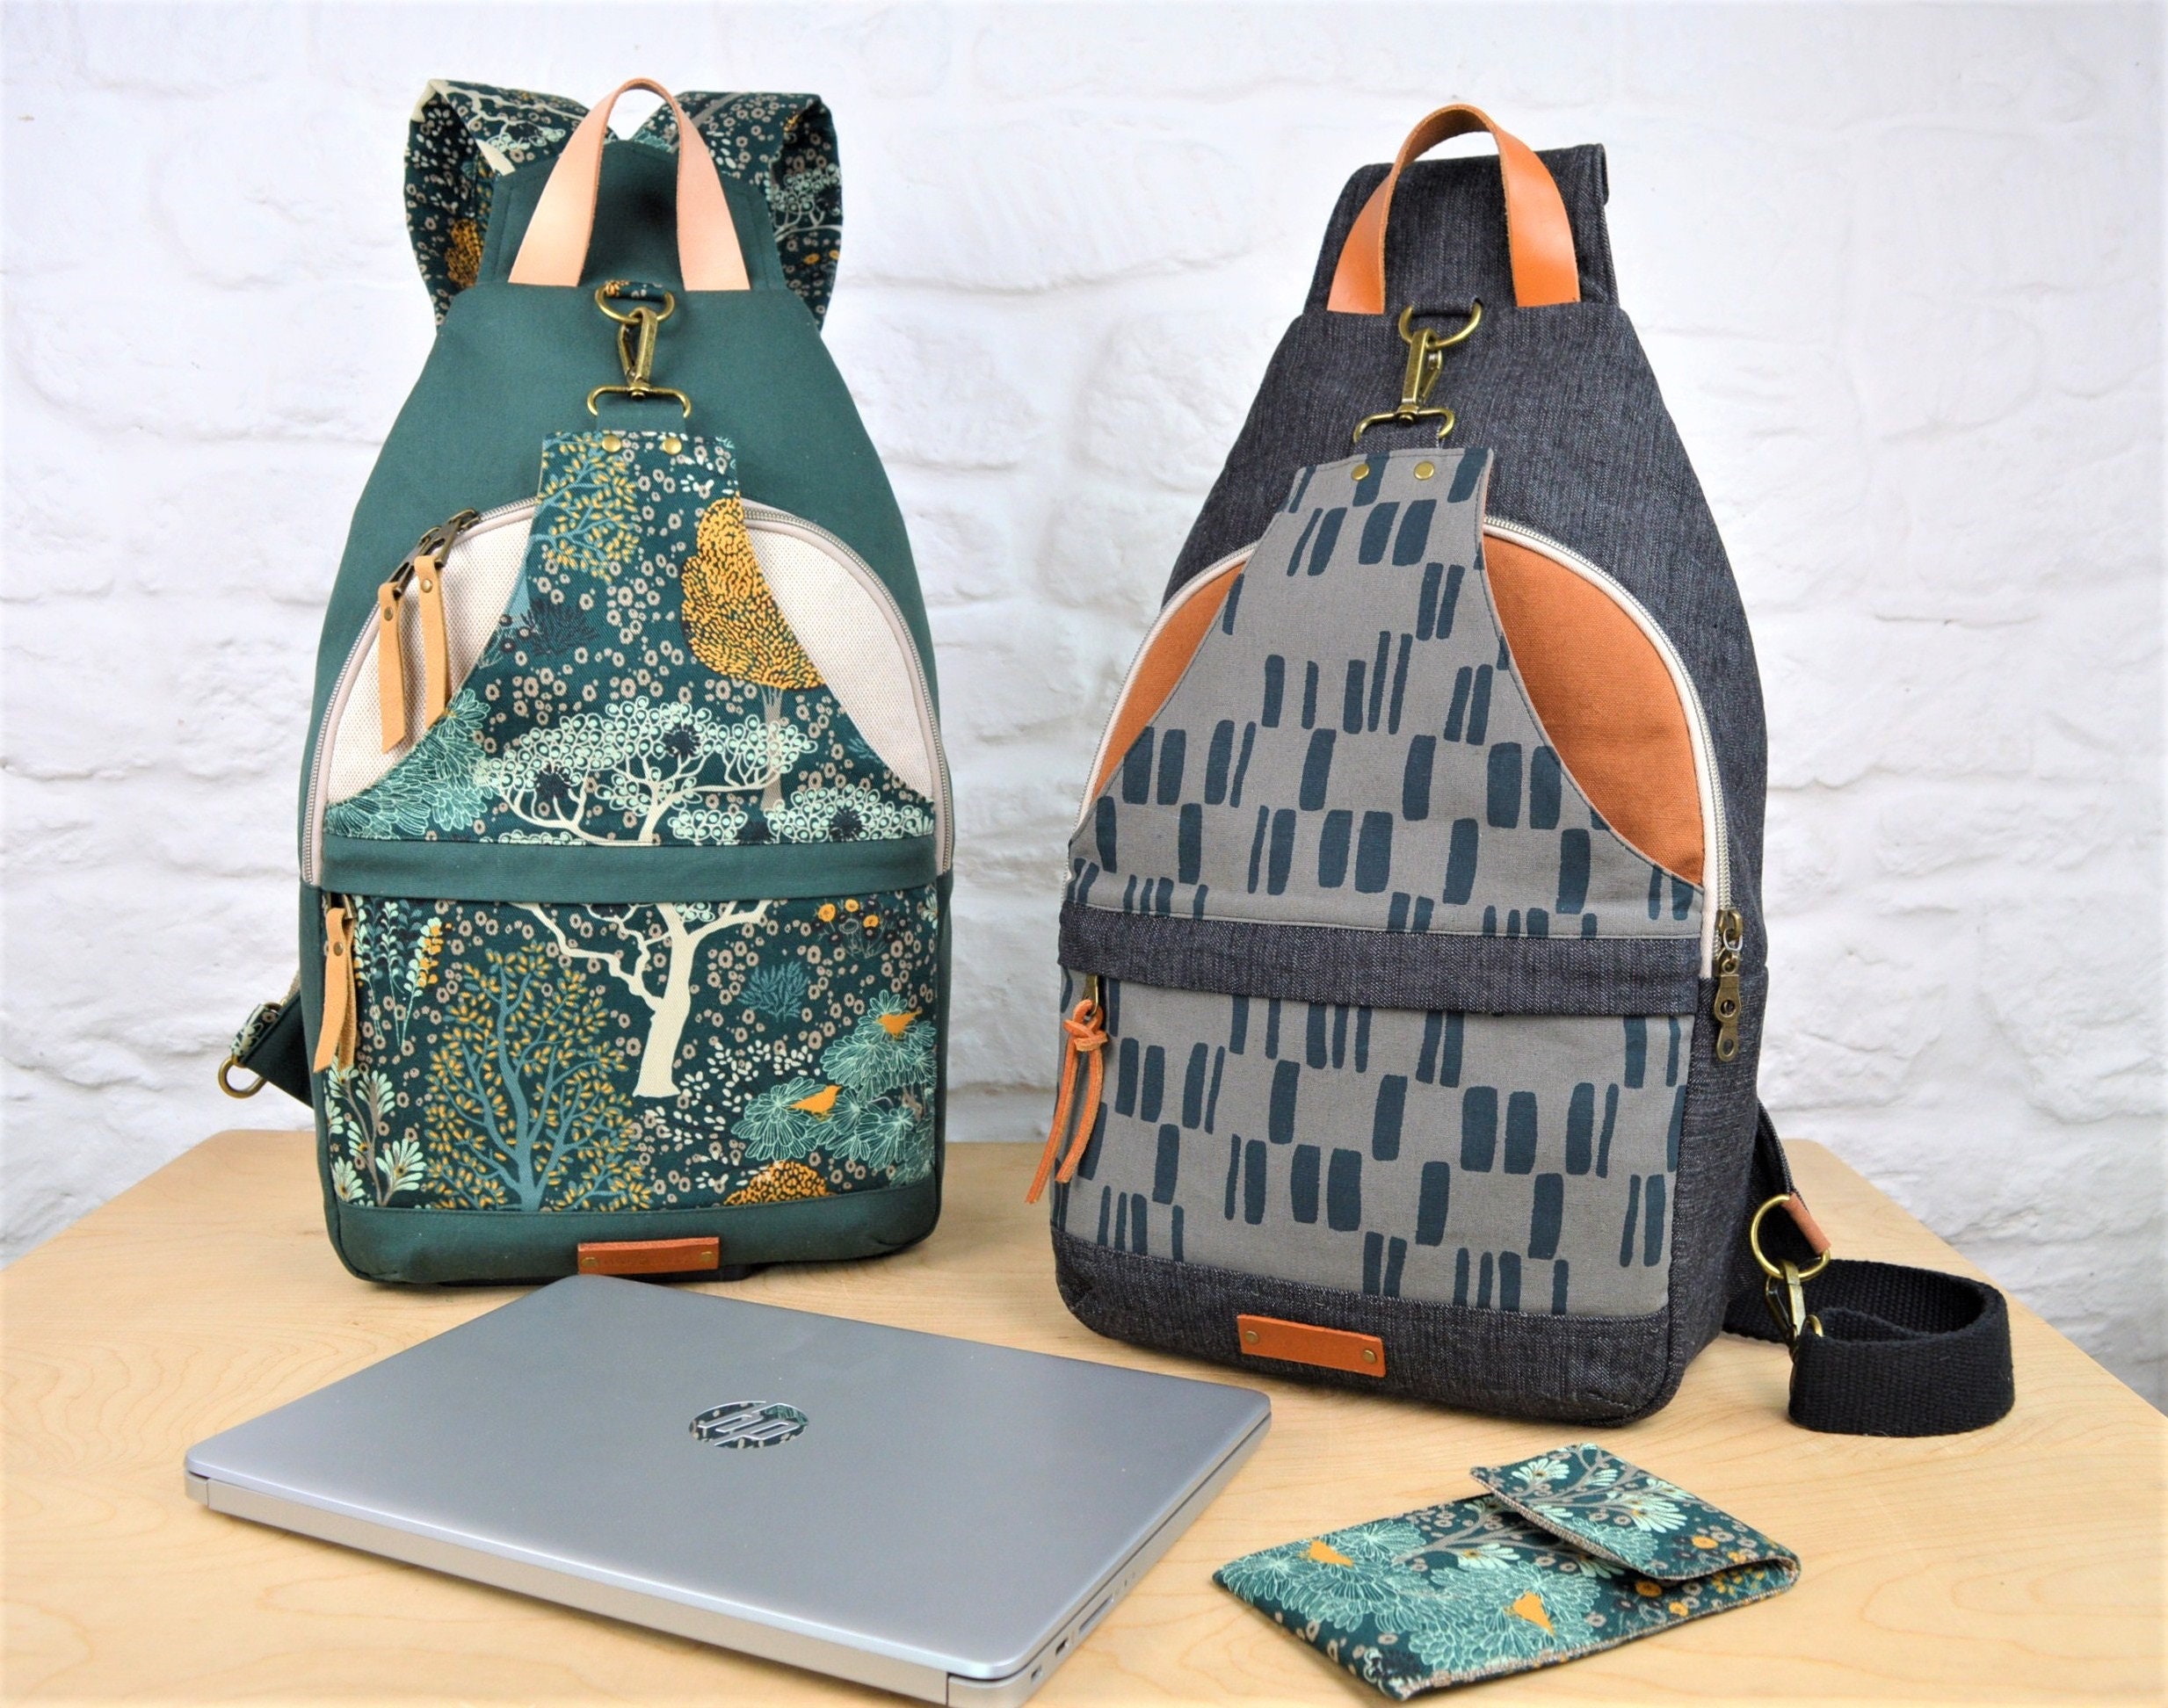 Sash Bag | Sling bag pattern, Coat pattern sewing, Bag pattern free